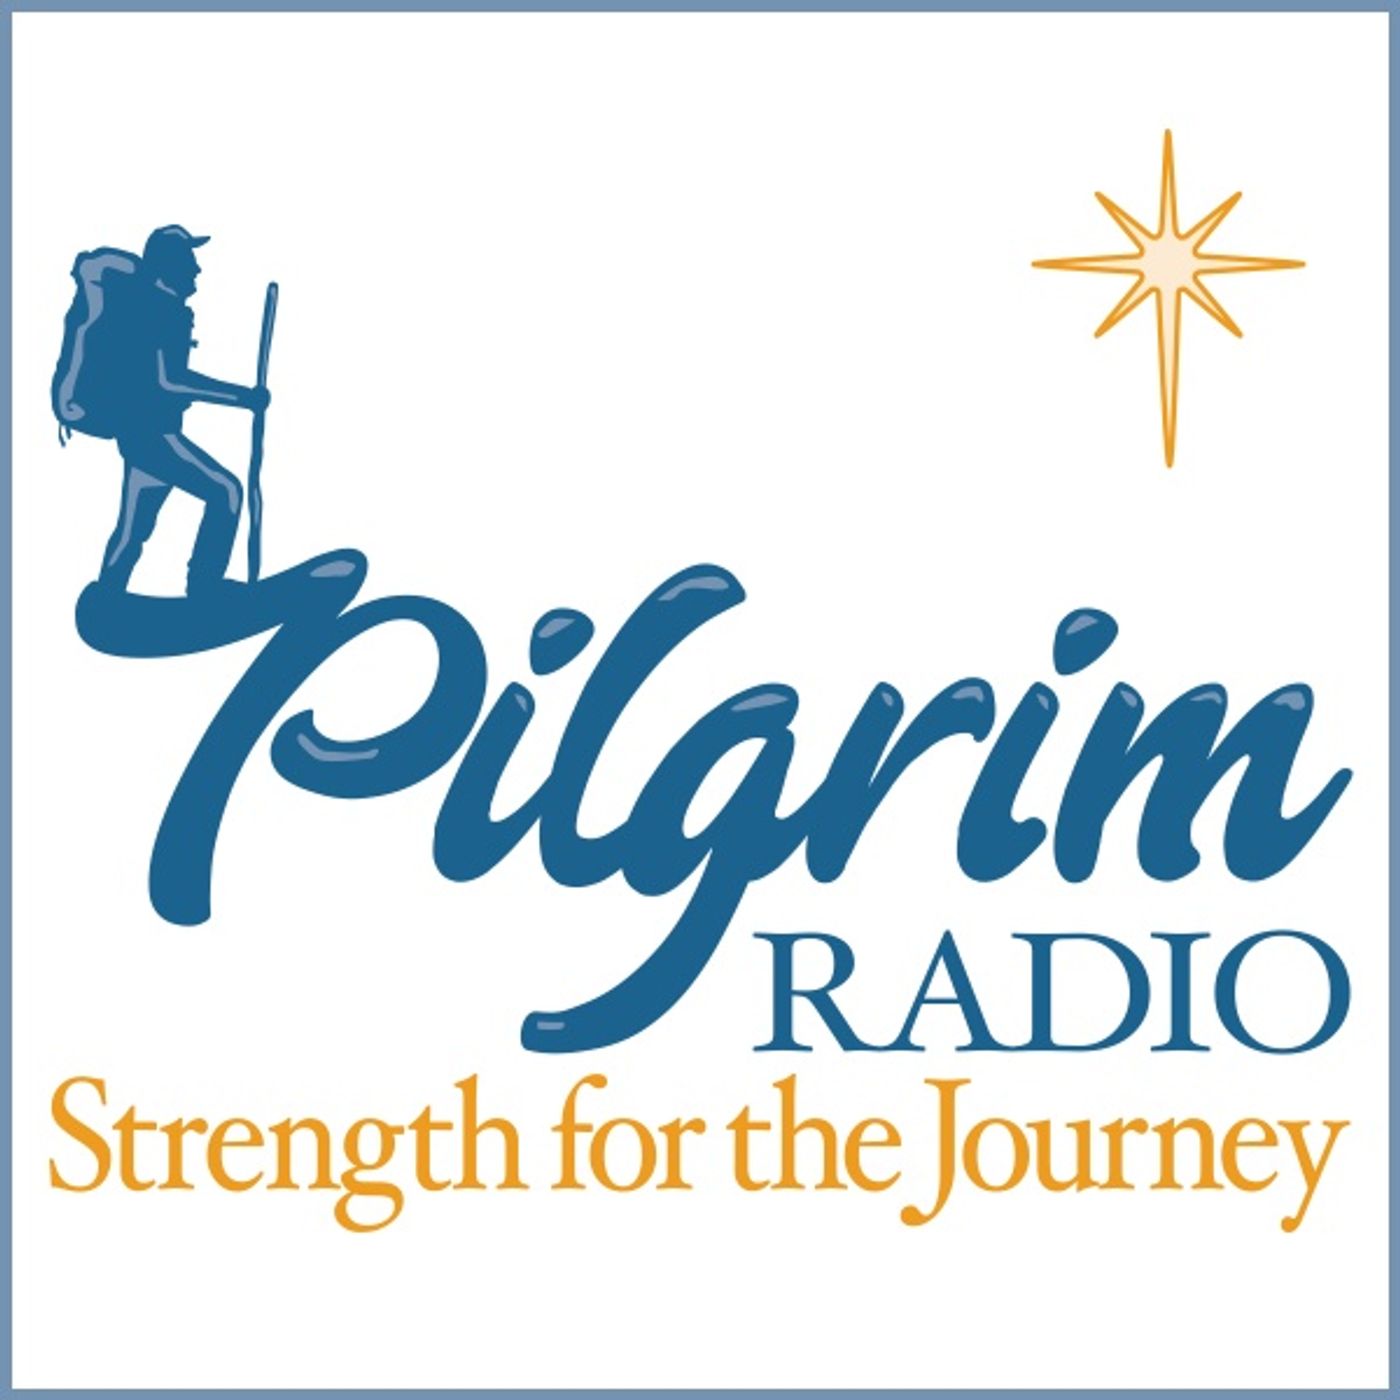 Pilgrim Radio